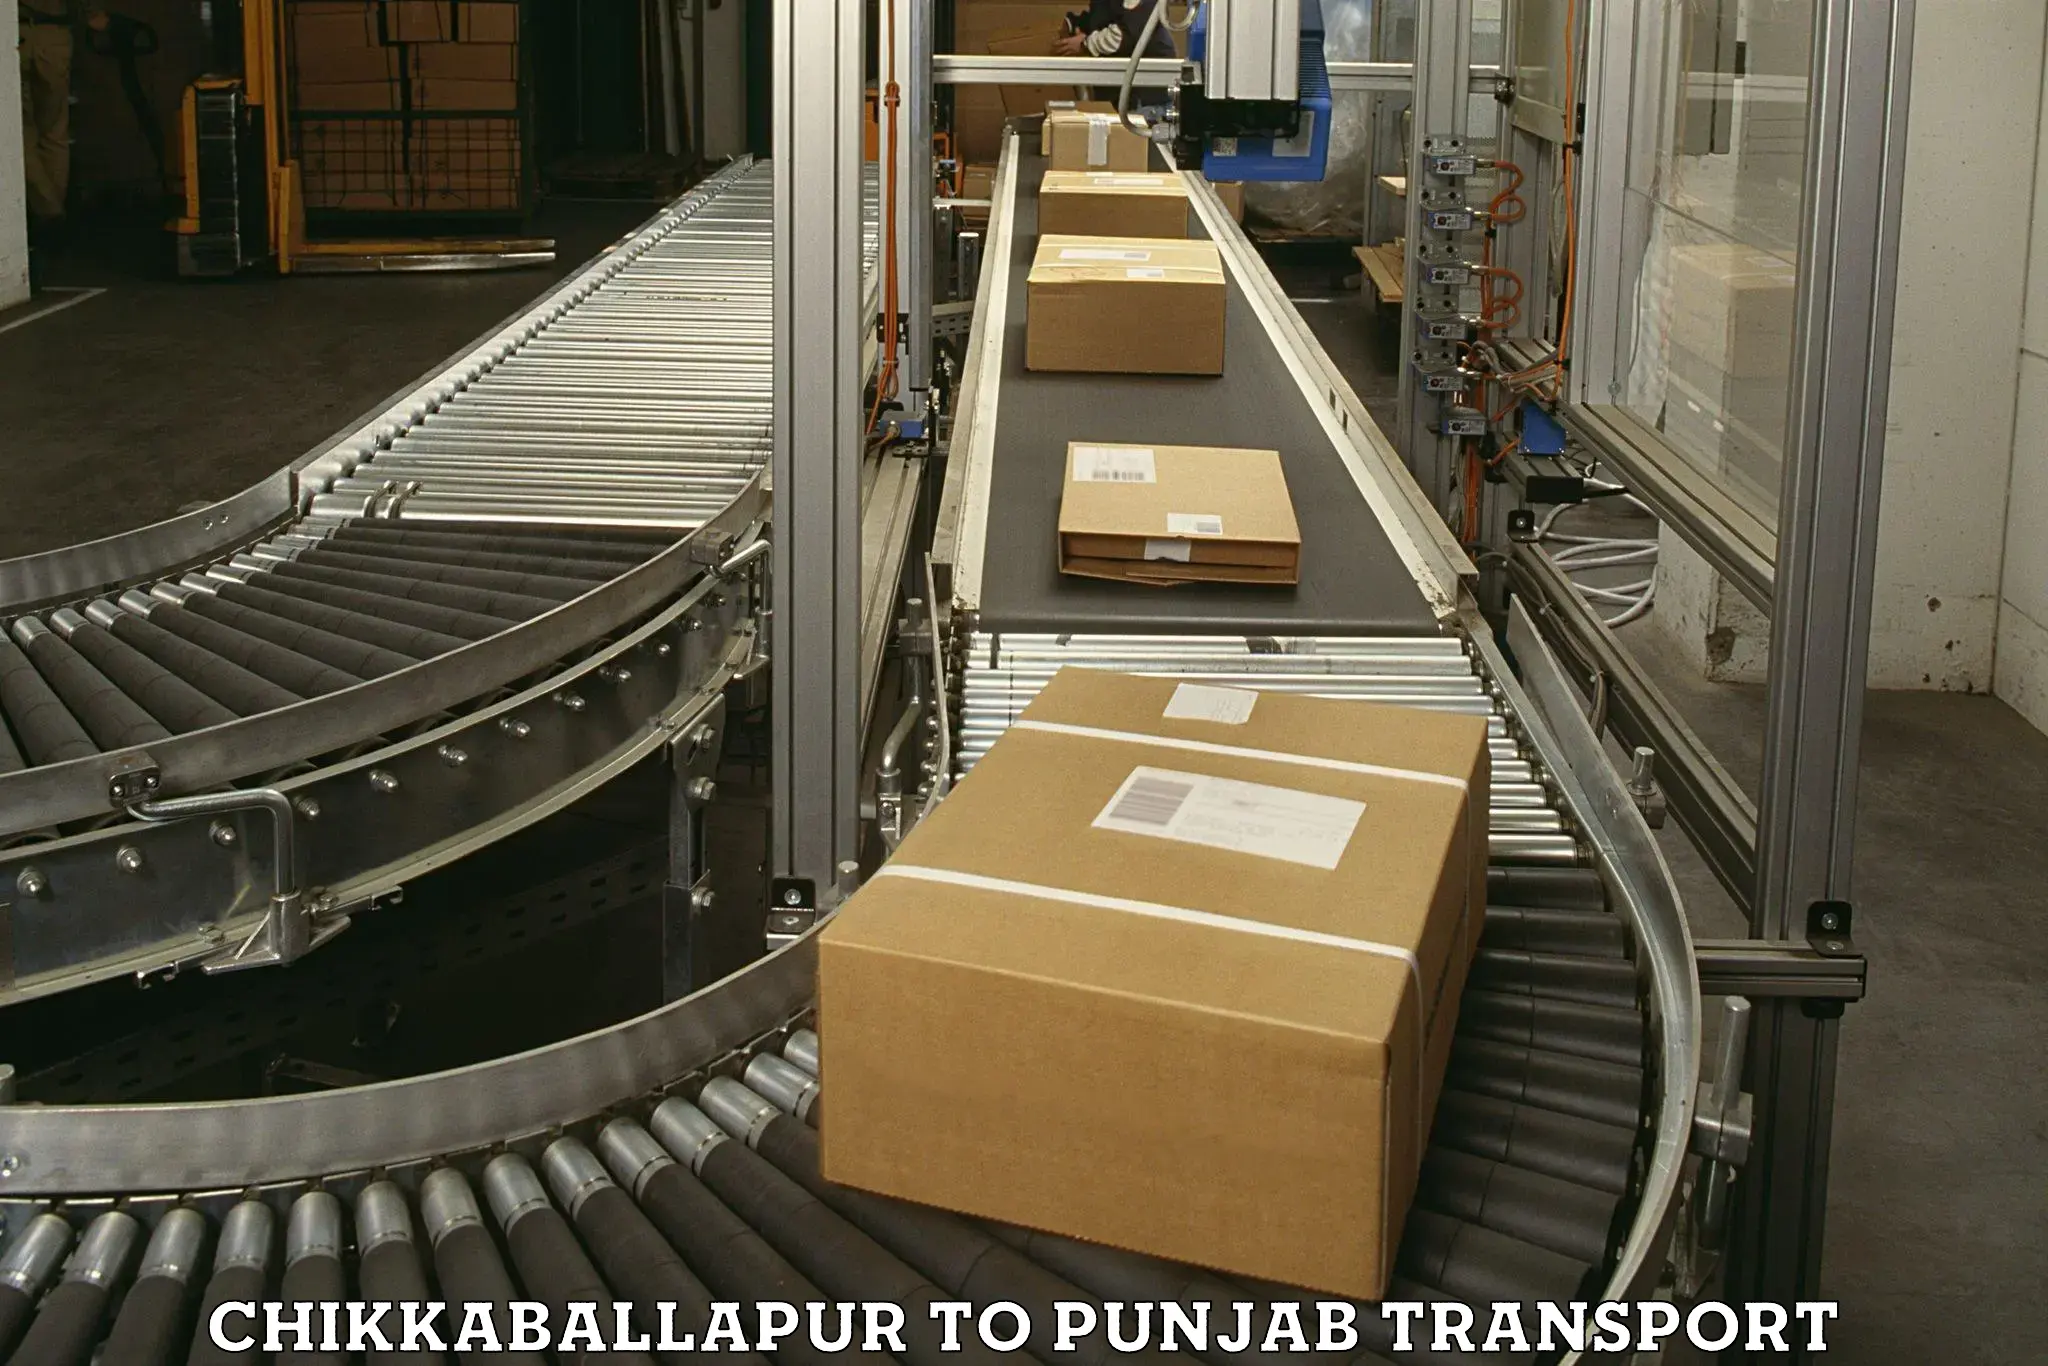 Road transport online services Chikkaballapur to Gurdaspur